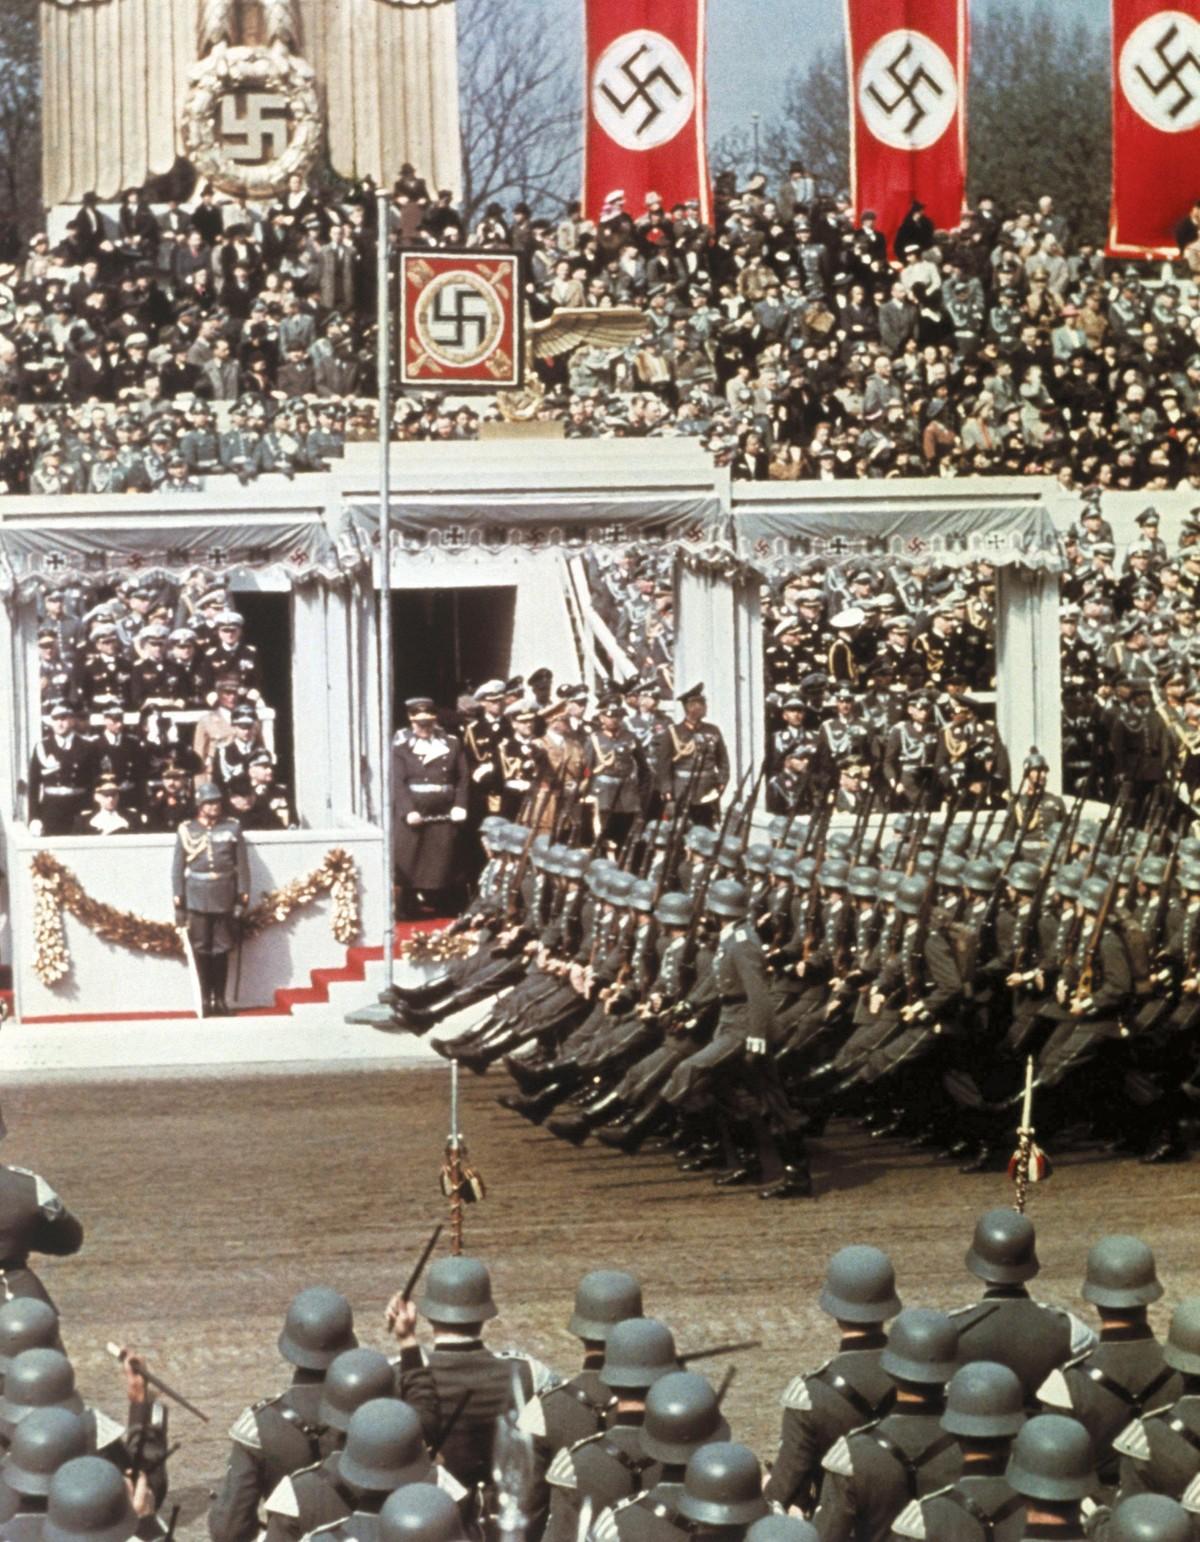 Défilé des SS (garde personnelle de Hitler) en l'honneur de l'anniversaire de Hitler, 20 avril 1939.